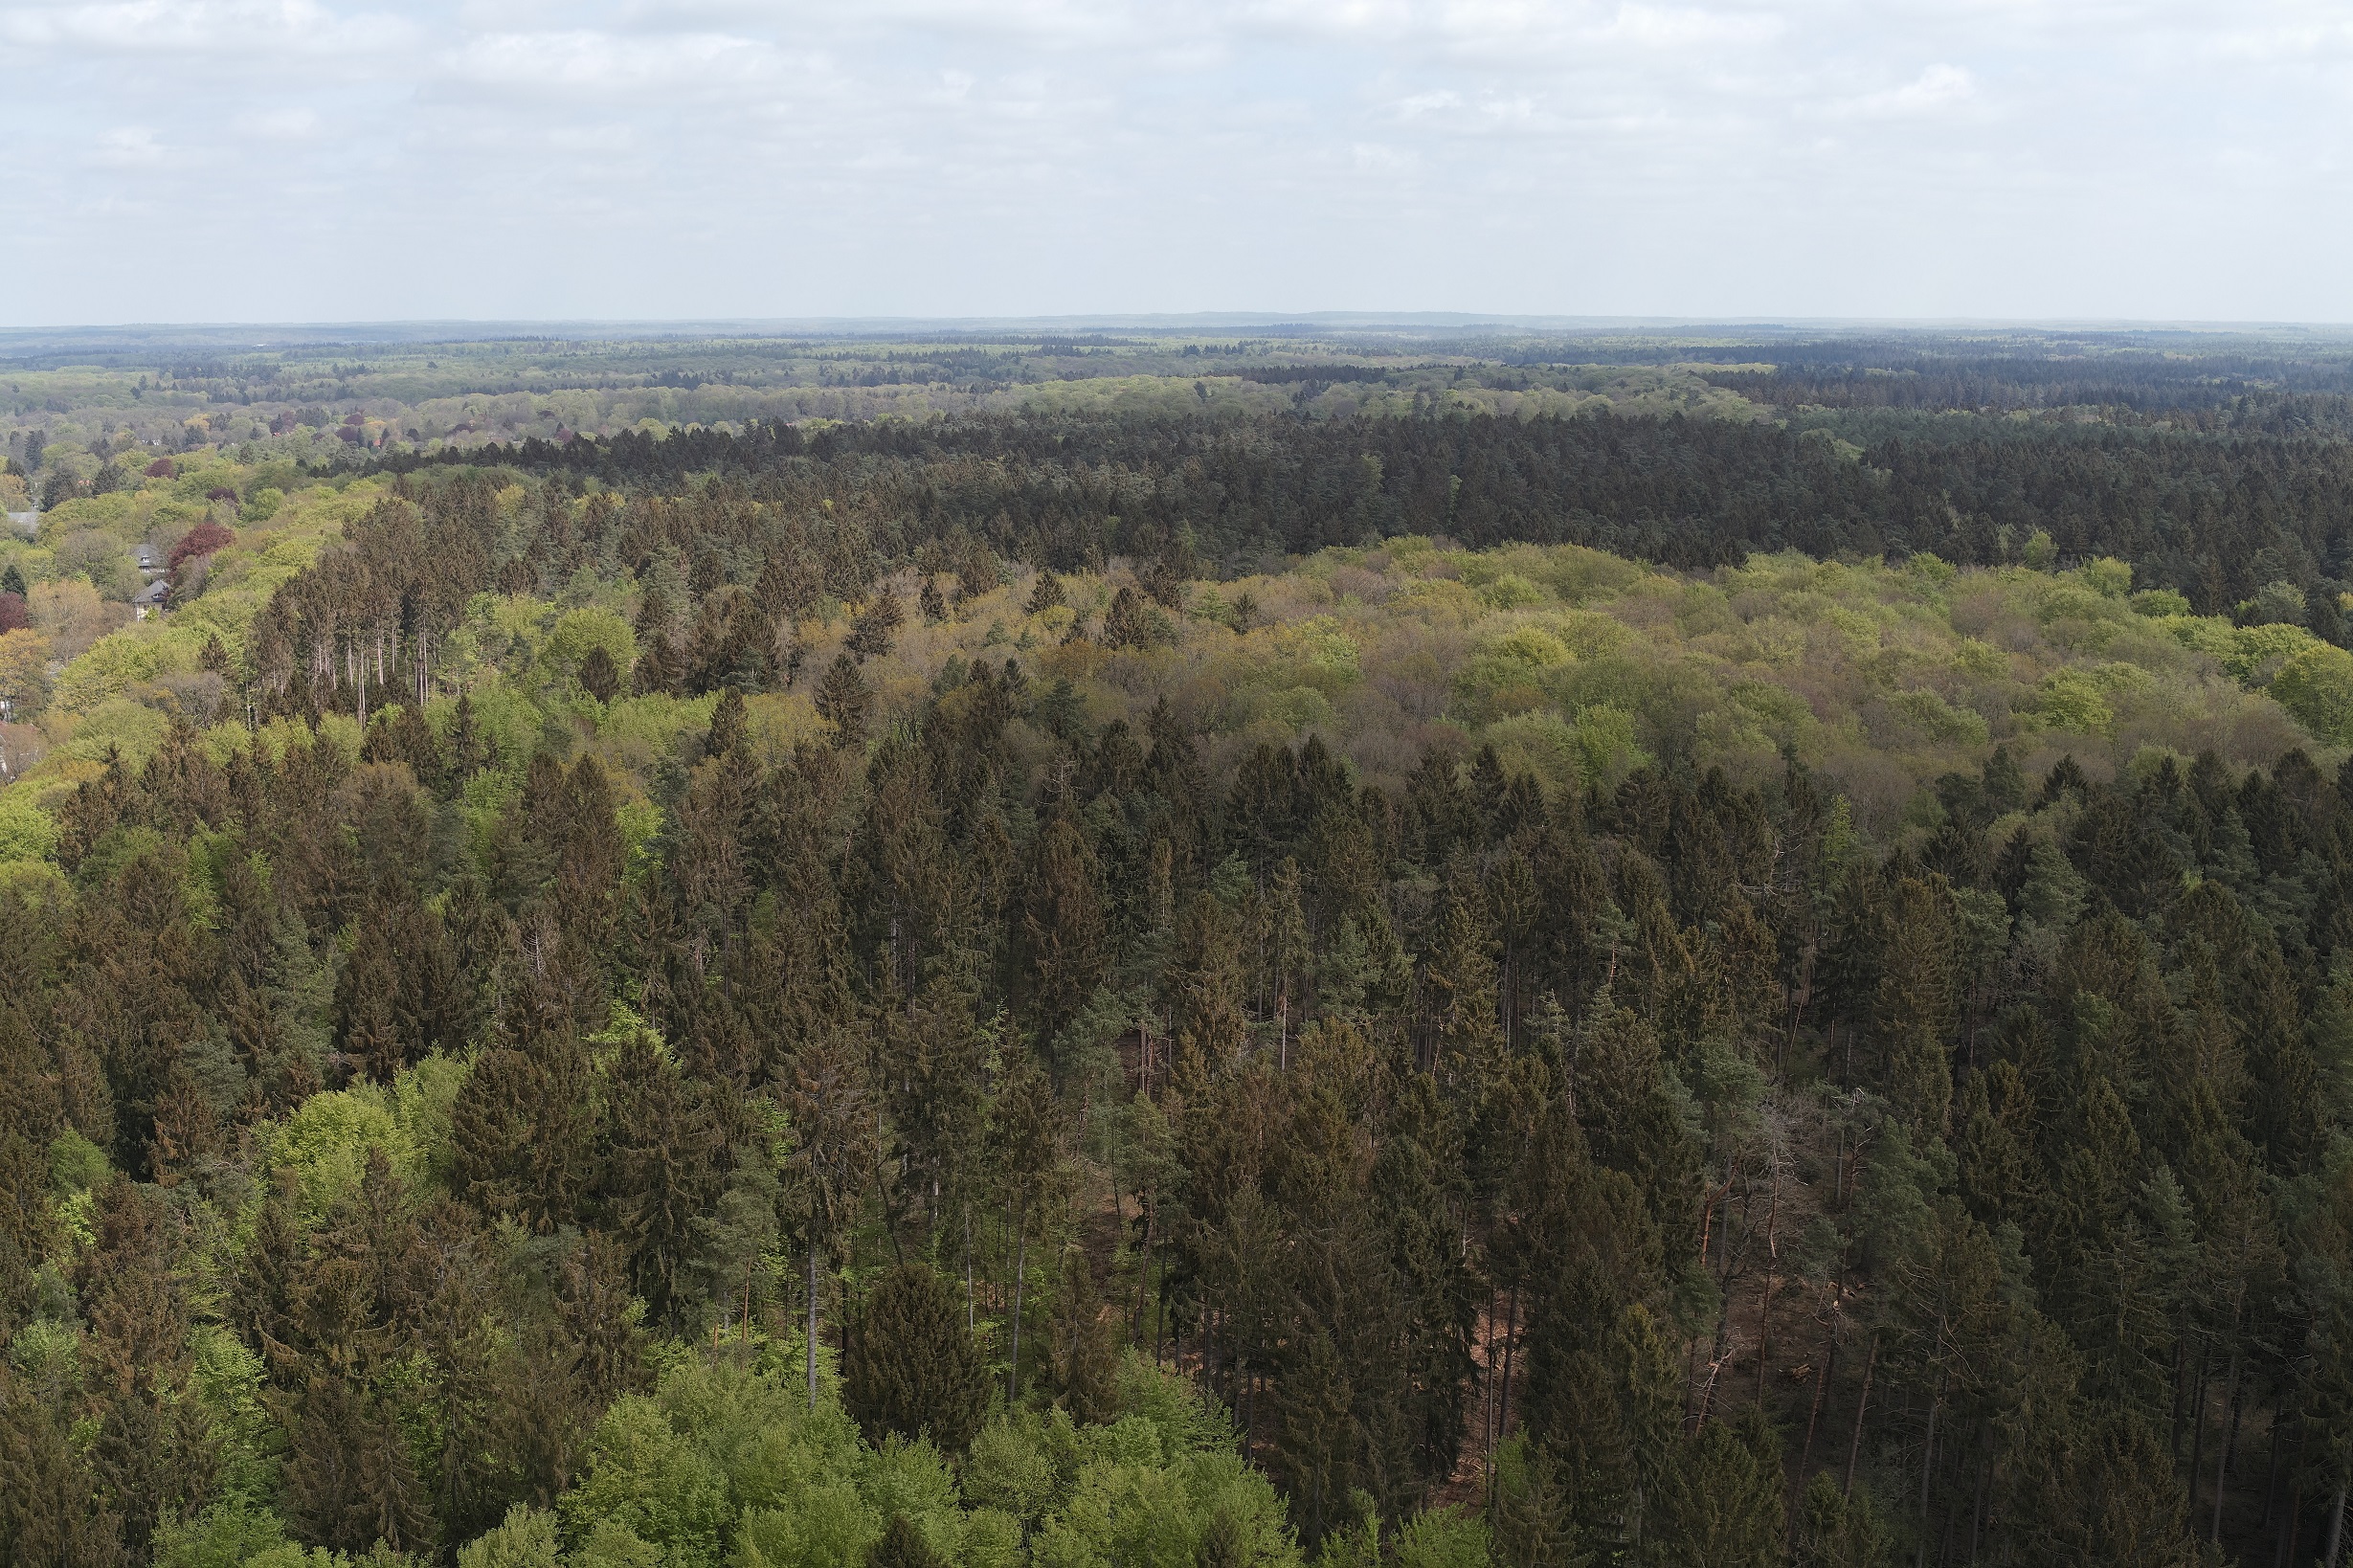 Luftbilder und KI gegen Sachsenwald Sturmschäden